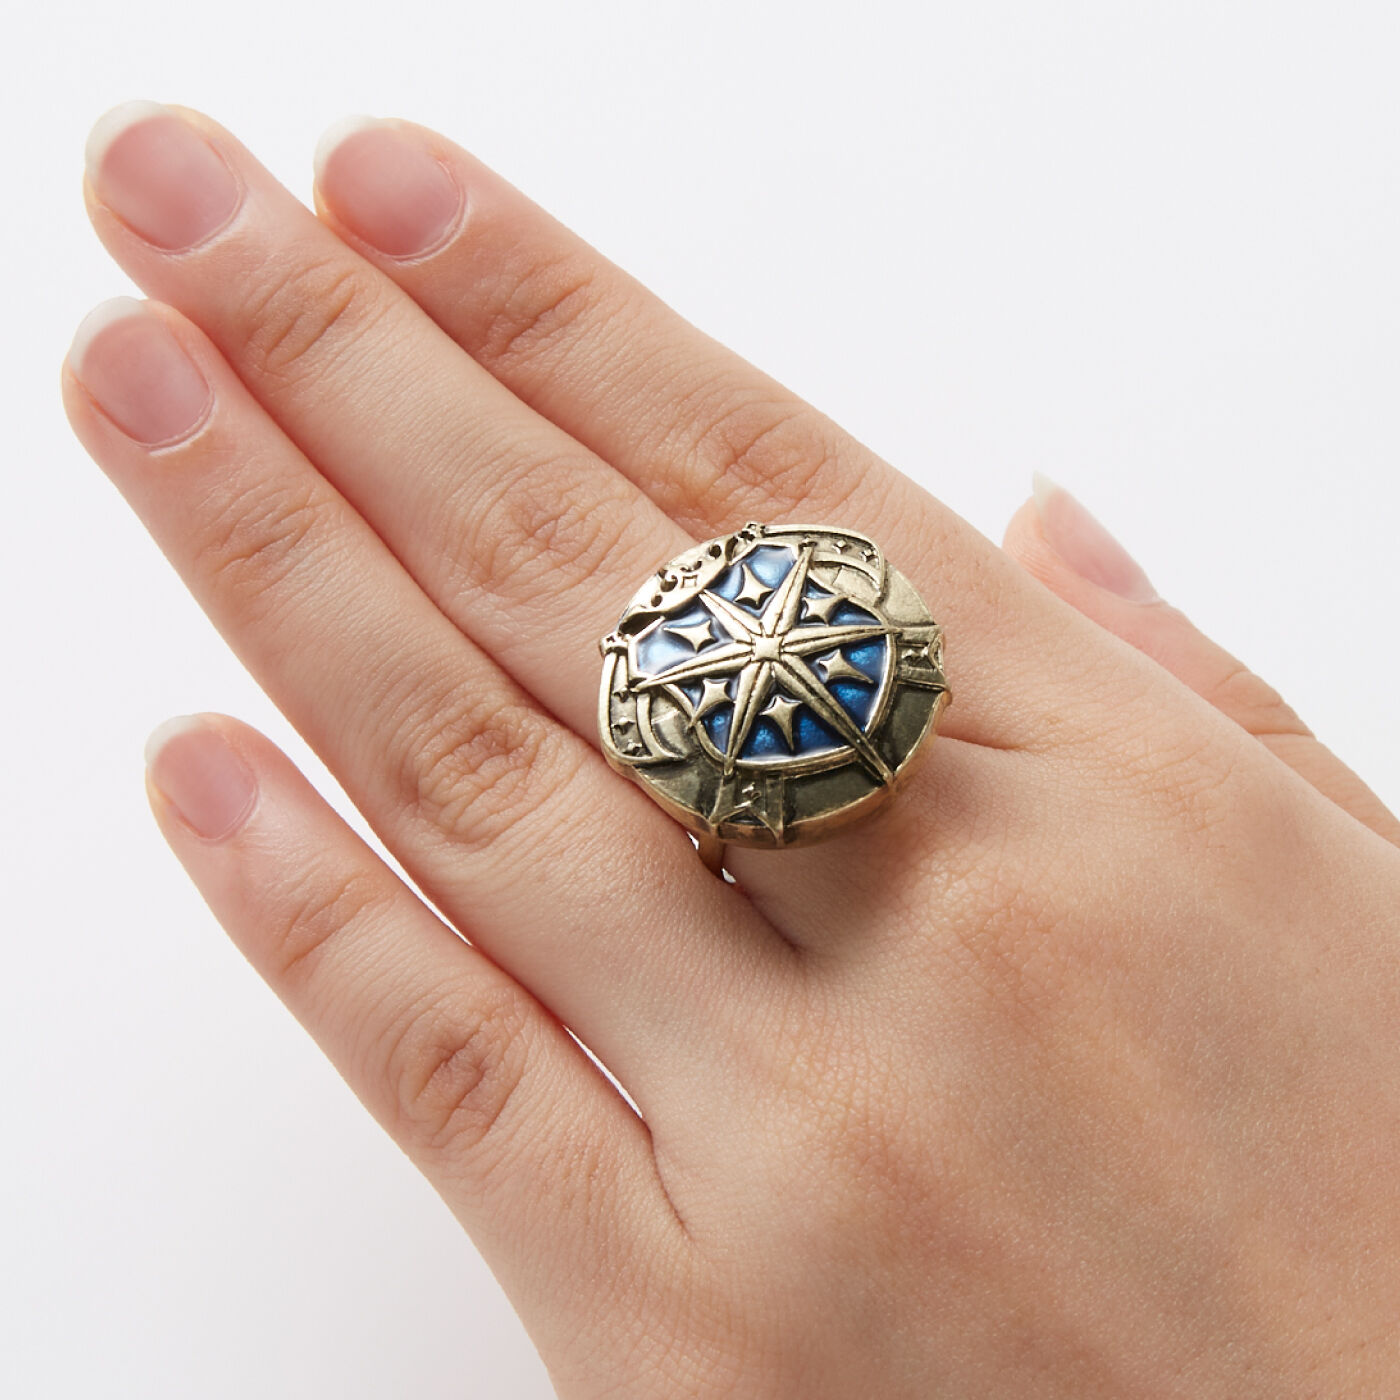 魔法部|魔法部×魔法使いの約束　国章ボタンカバー〈北の国〉|指輪に付ければ、存在感のある大きめのモチーフリング風に。※指輪の形状によっては付けられない場合があります。※お届けする柄とは異なります。